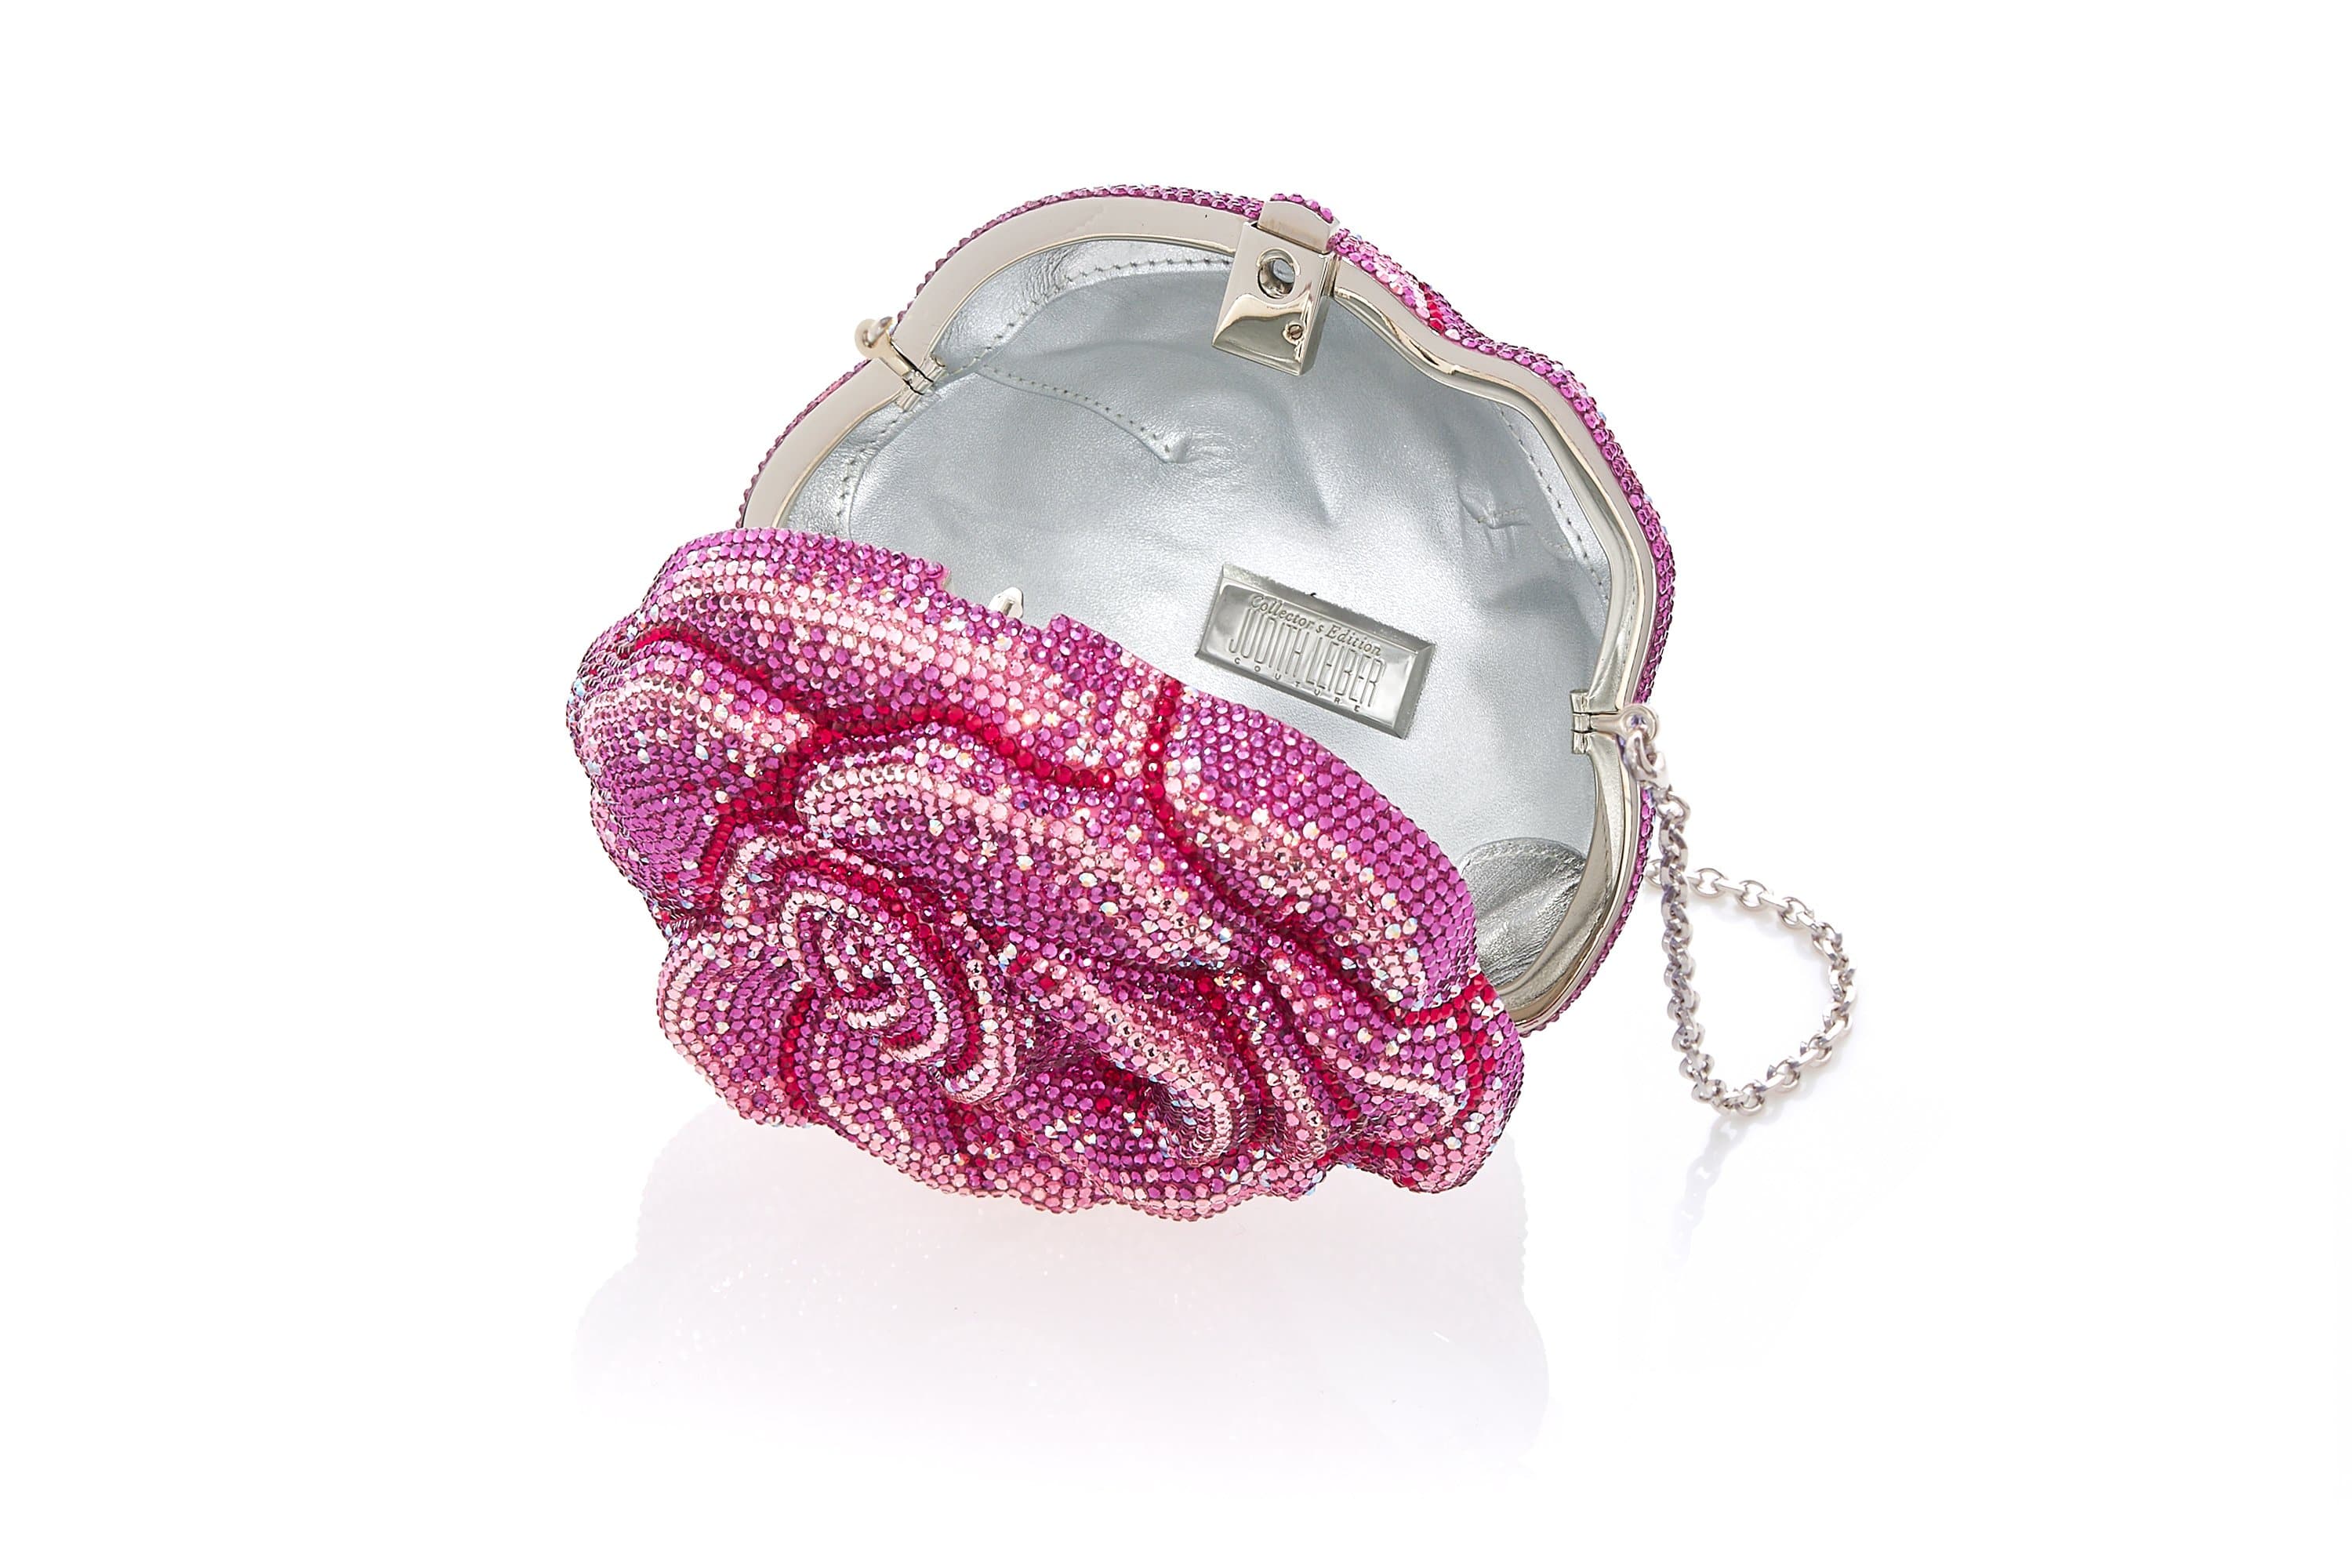 image?url= judith-leiber-couture-rose-crystal-embellished-clutch .jpg?v=1679913803&w=3840&q=75